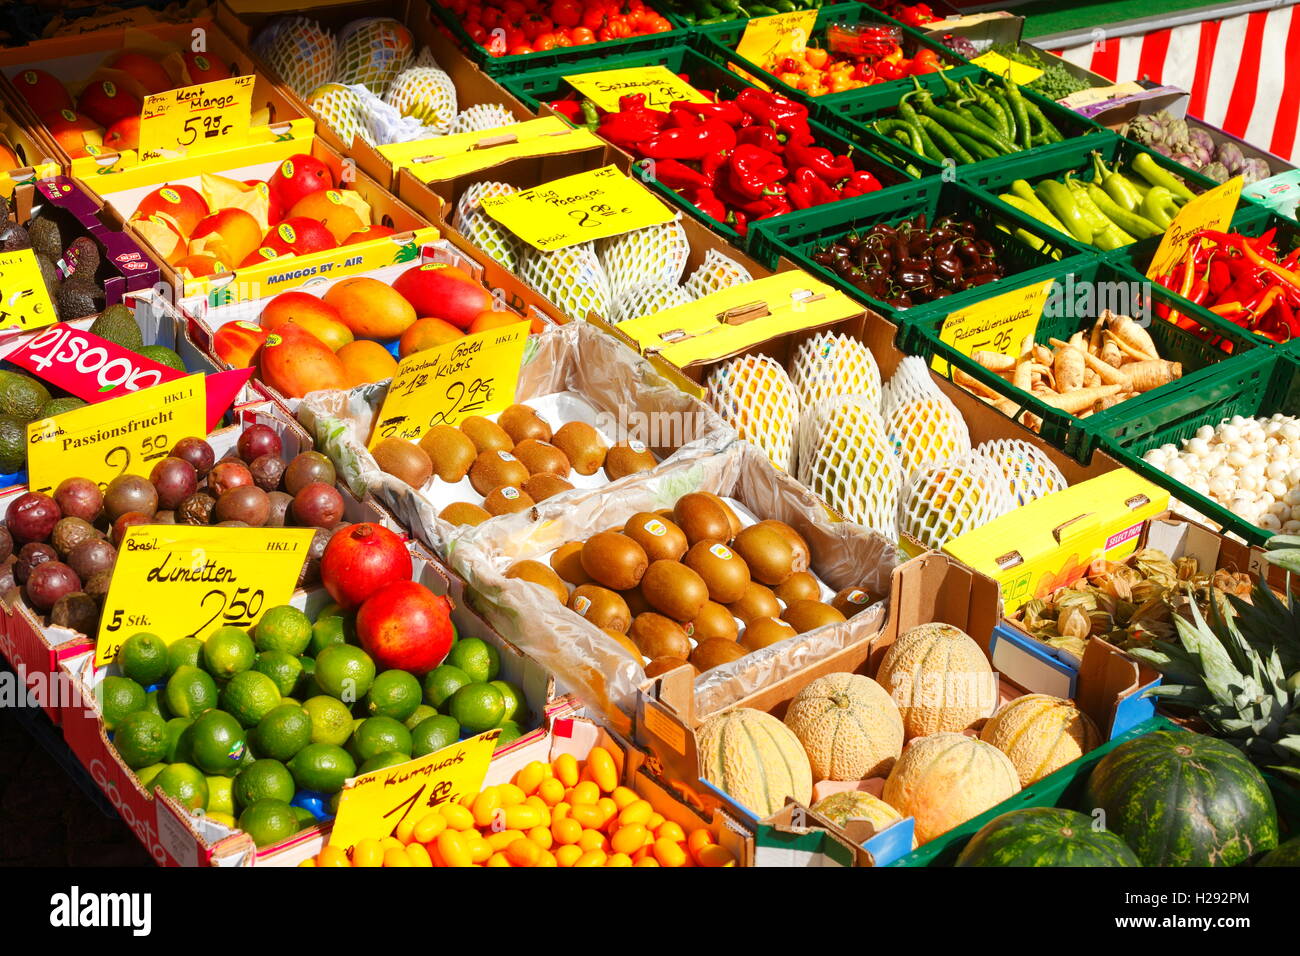 Obst und Gemüse auf einem Marktstand, Brema, Deutschland, Europa Foto Stock